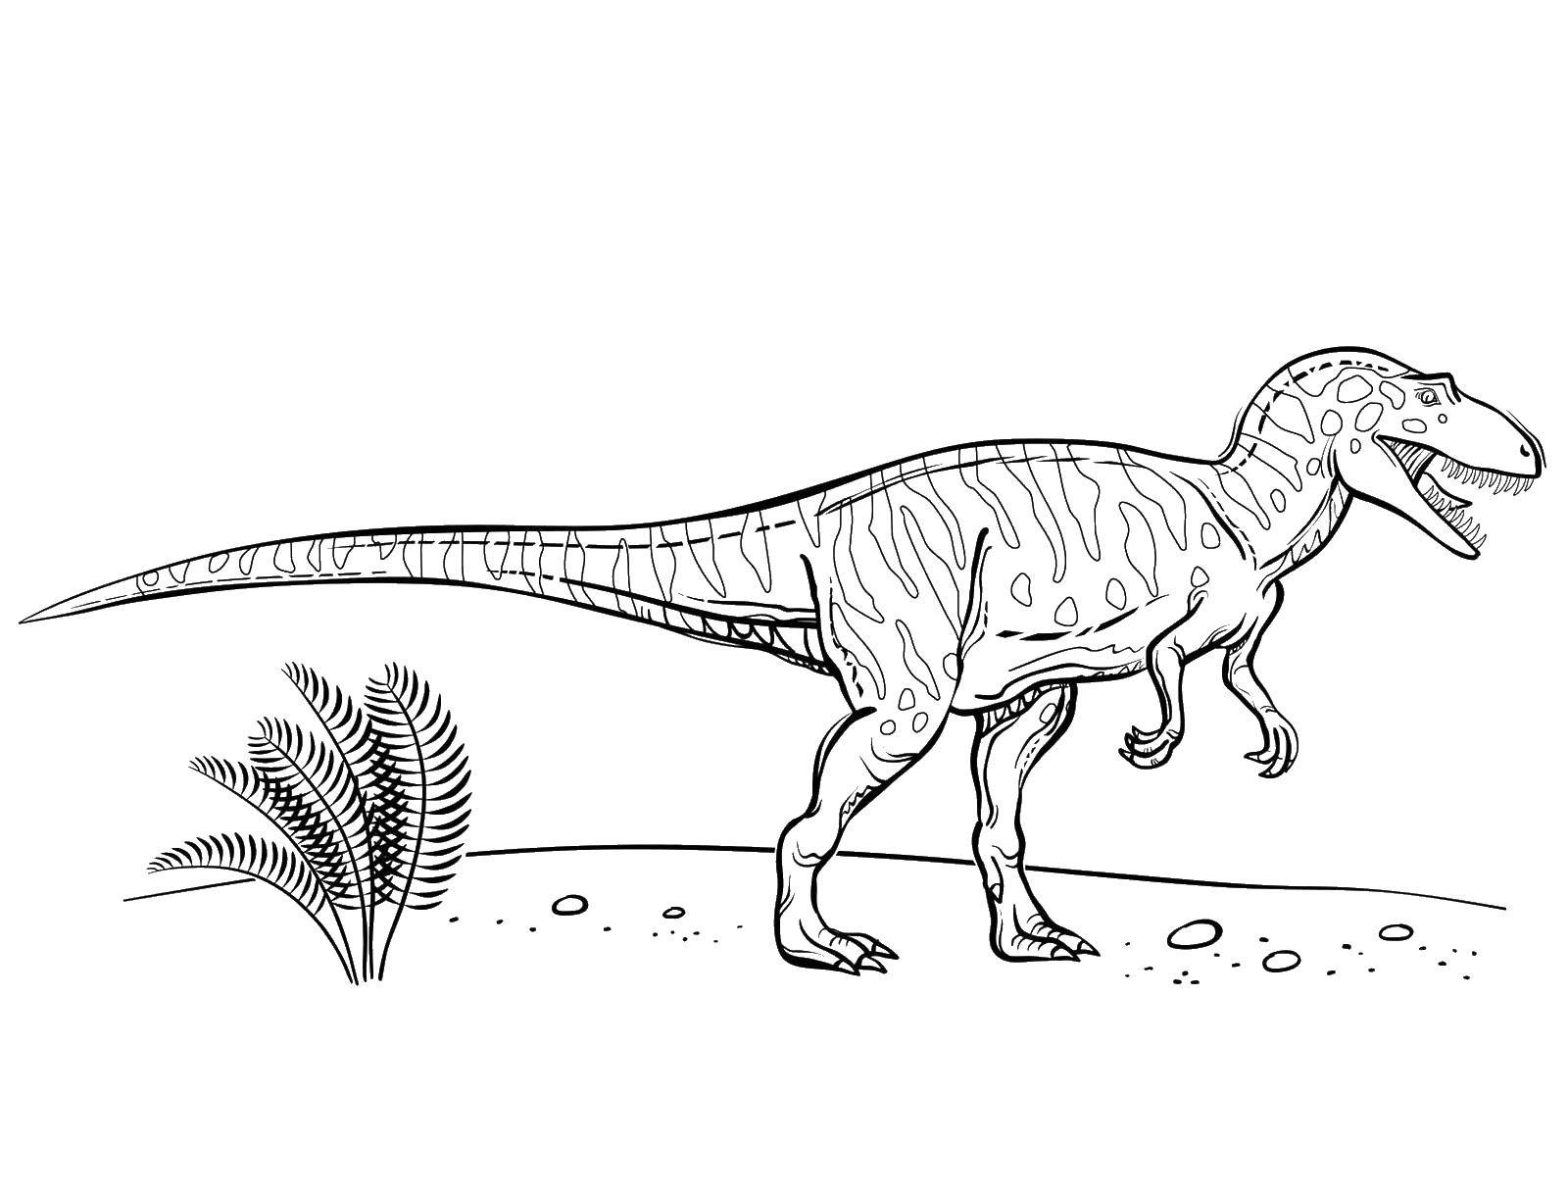 Раскраска с динозавром из Парка юрского периода